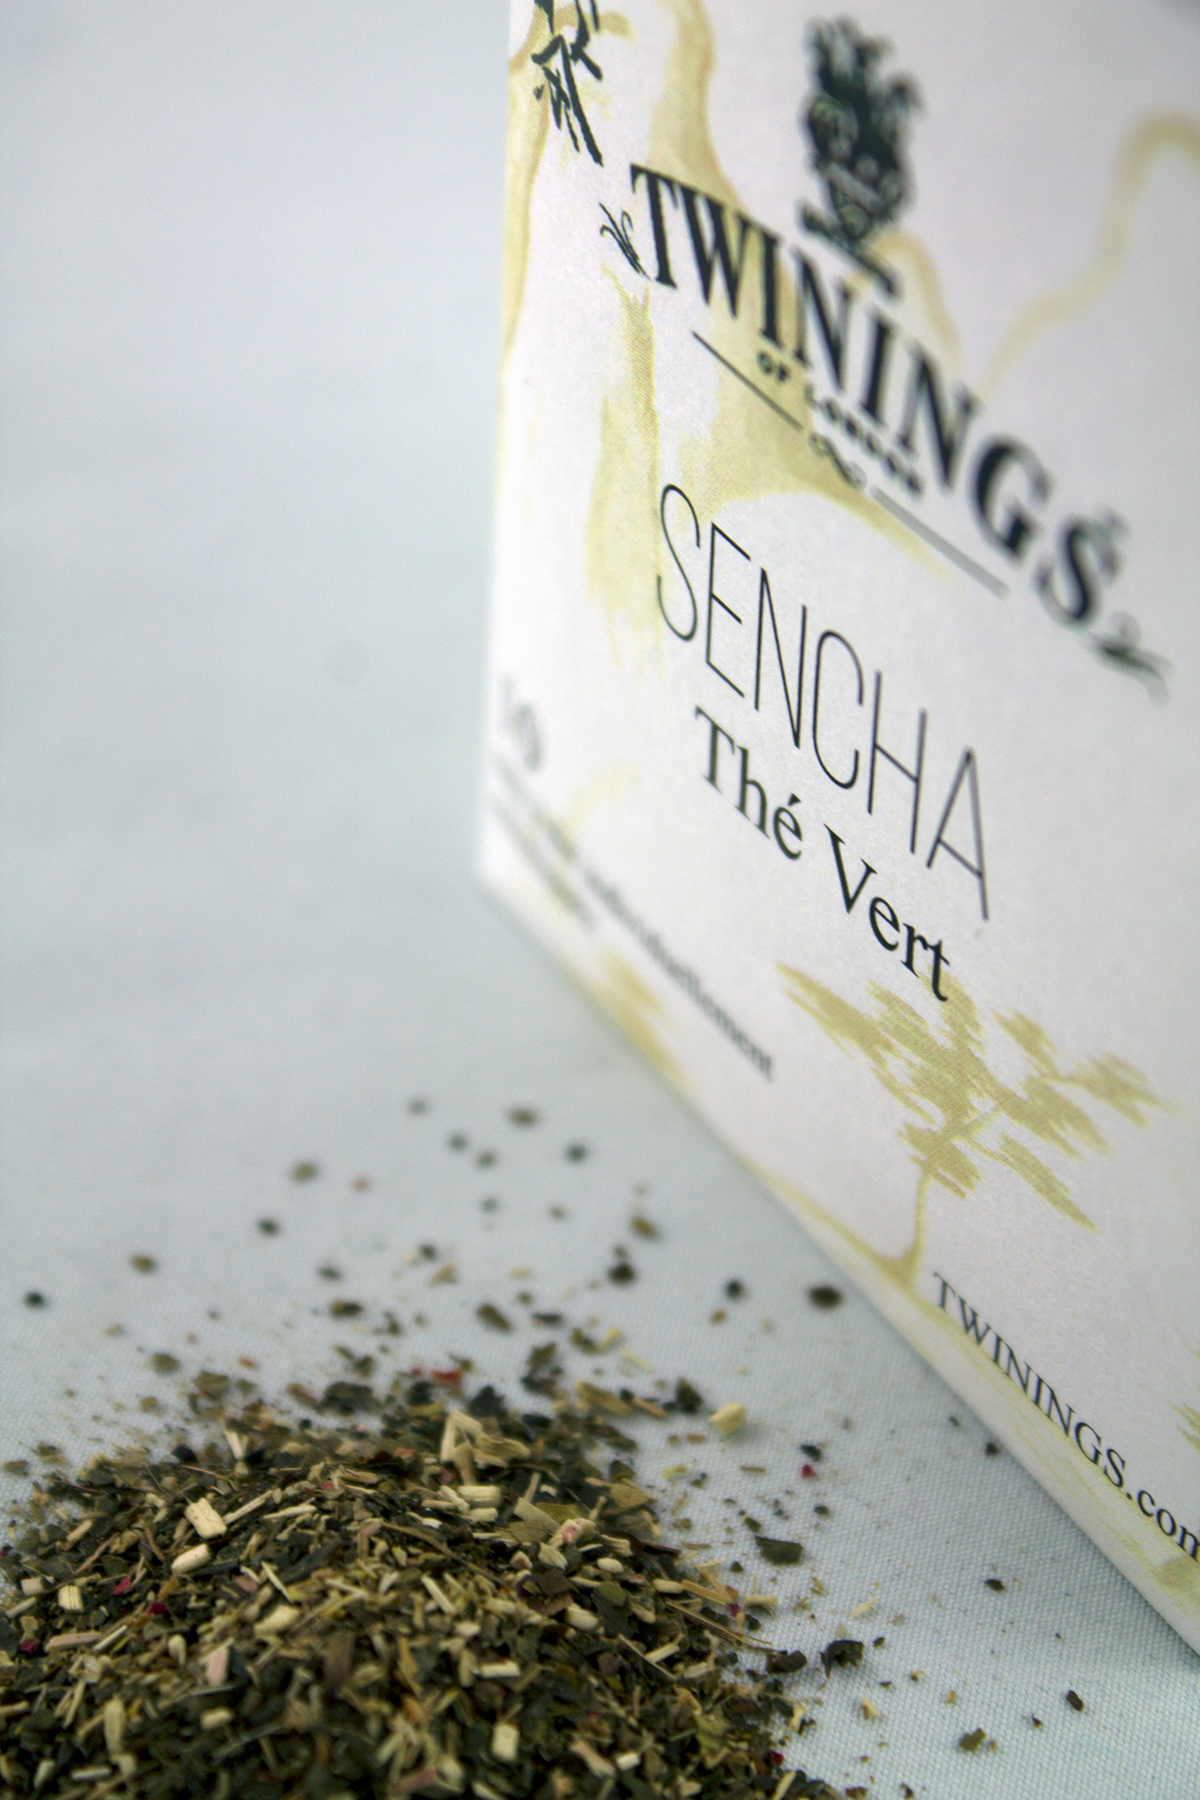 twinings tea green tea matcha sencha ginseng